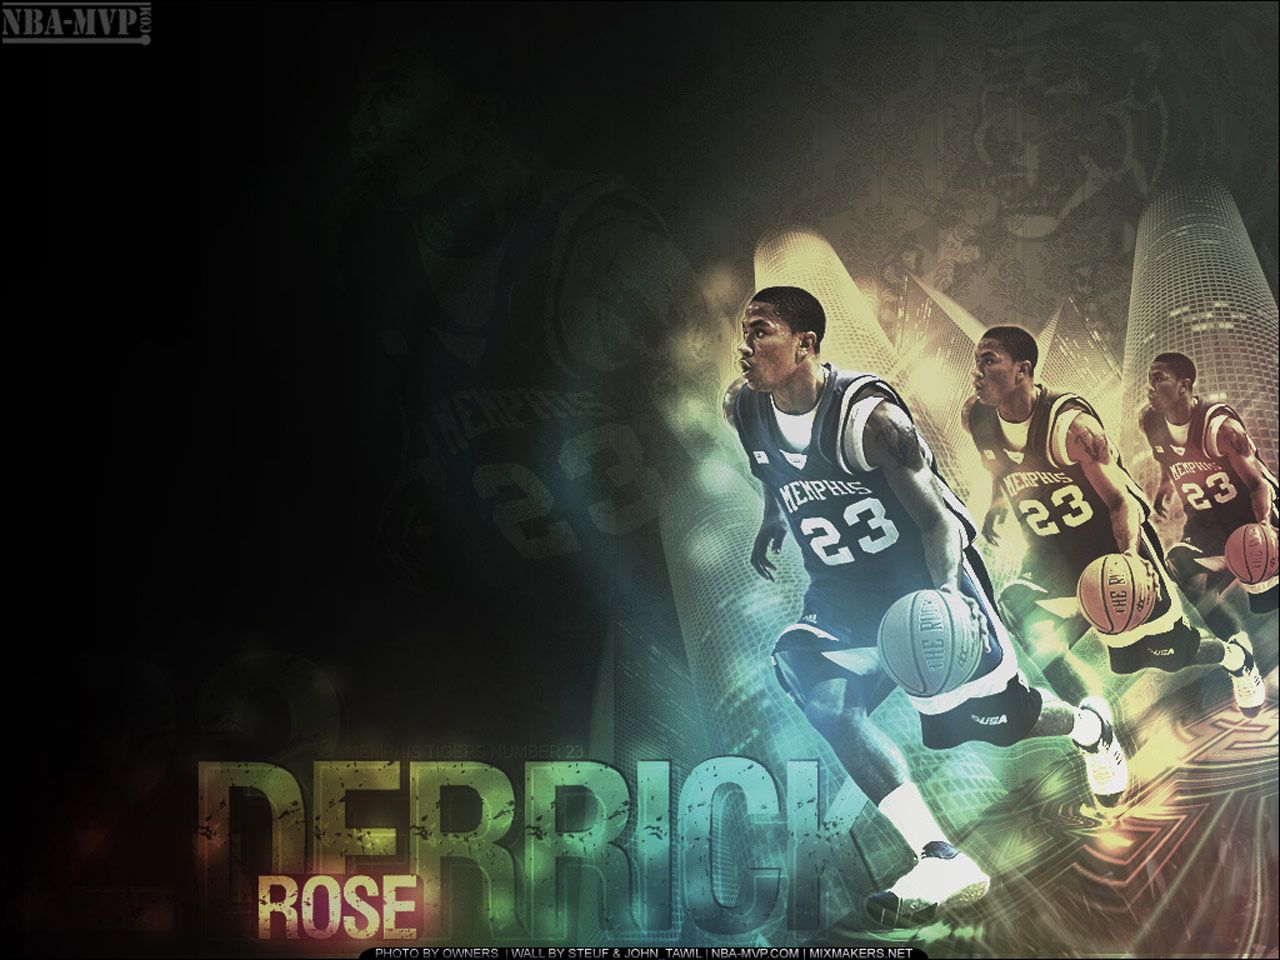 Derrick Rose Memphis Tigers Wallpaper | Basketball Wallpapers at ...